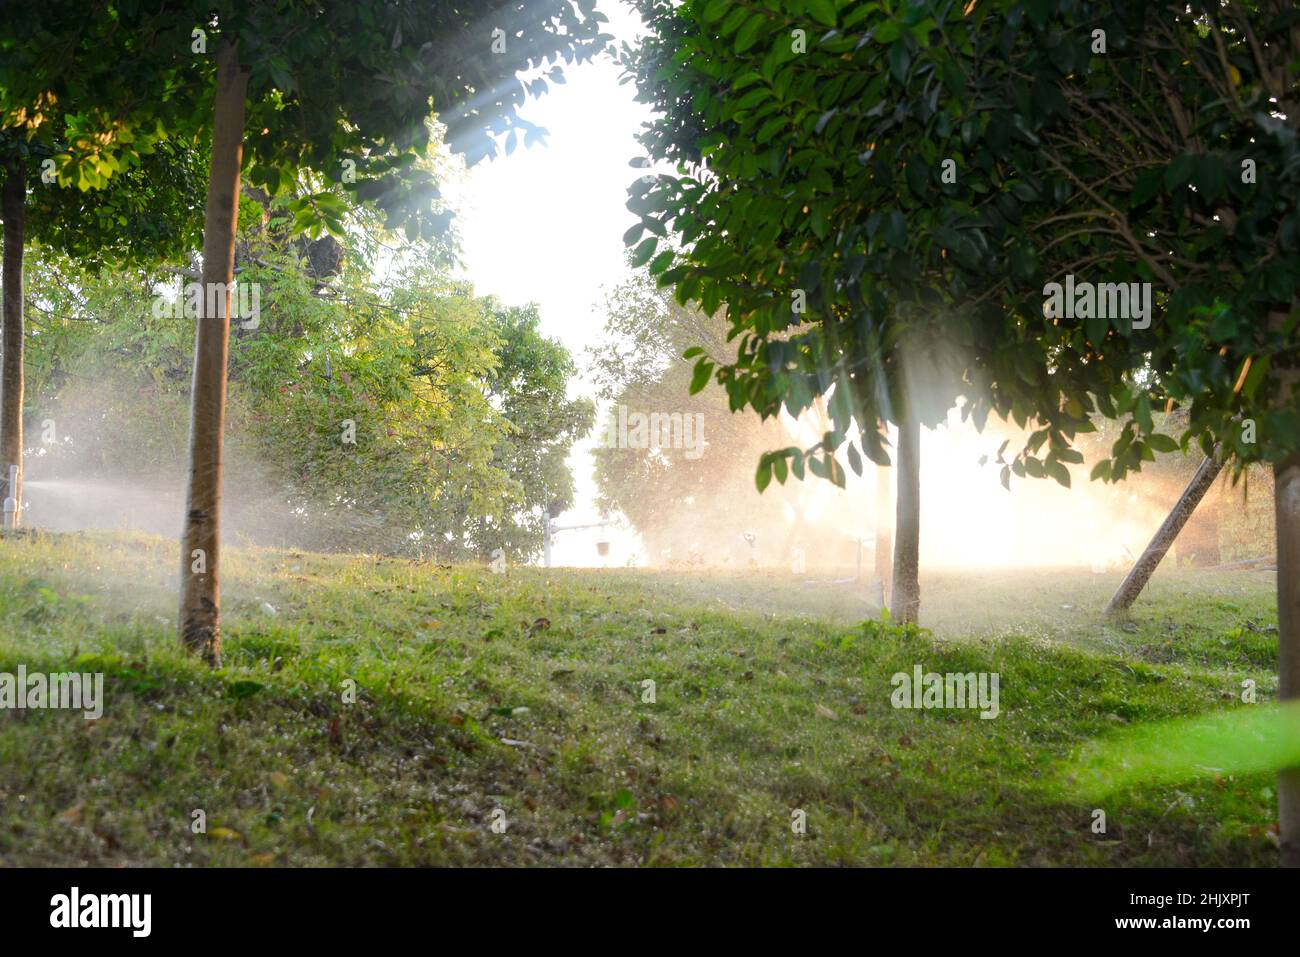 L'irrigazione a goccia viene utilizzata per innaffiare le piante agricole. Foto Stock